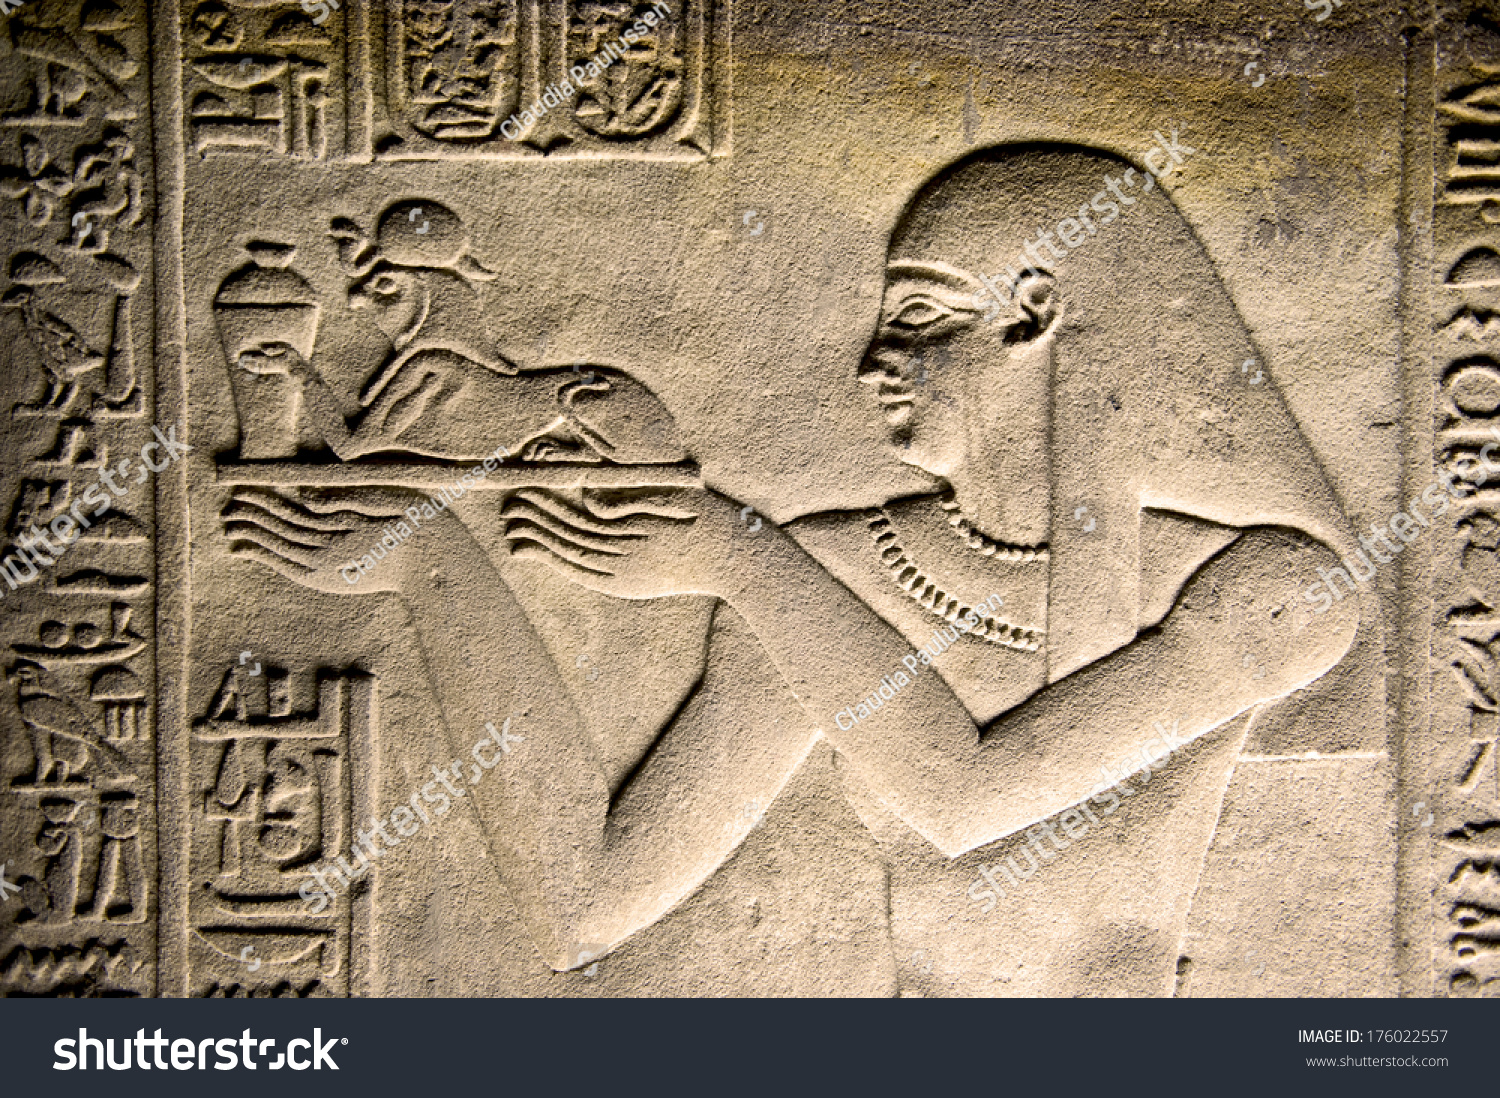 Egyptian wall mural